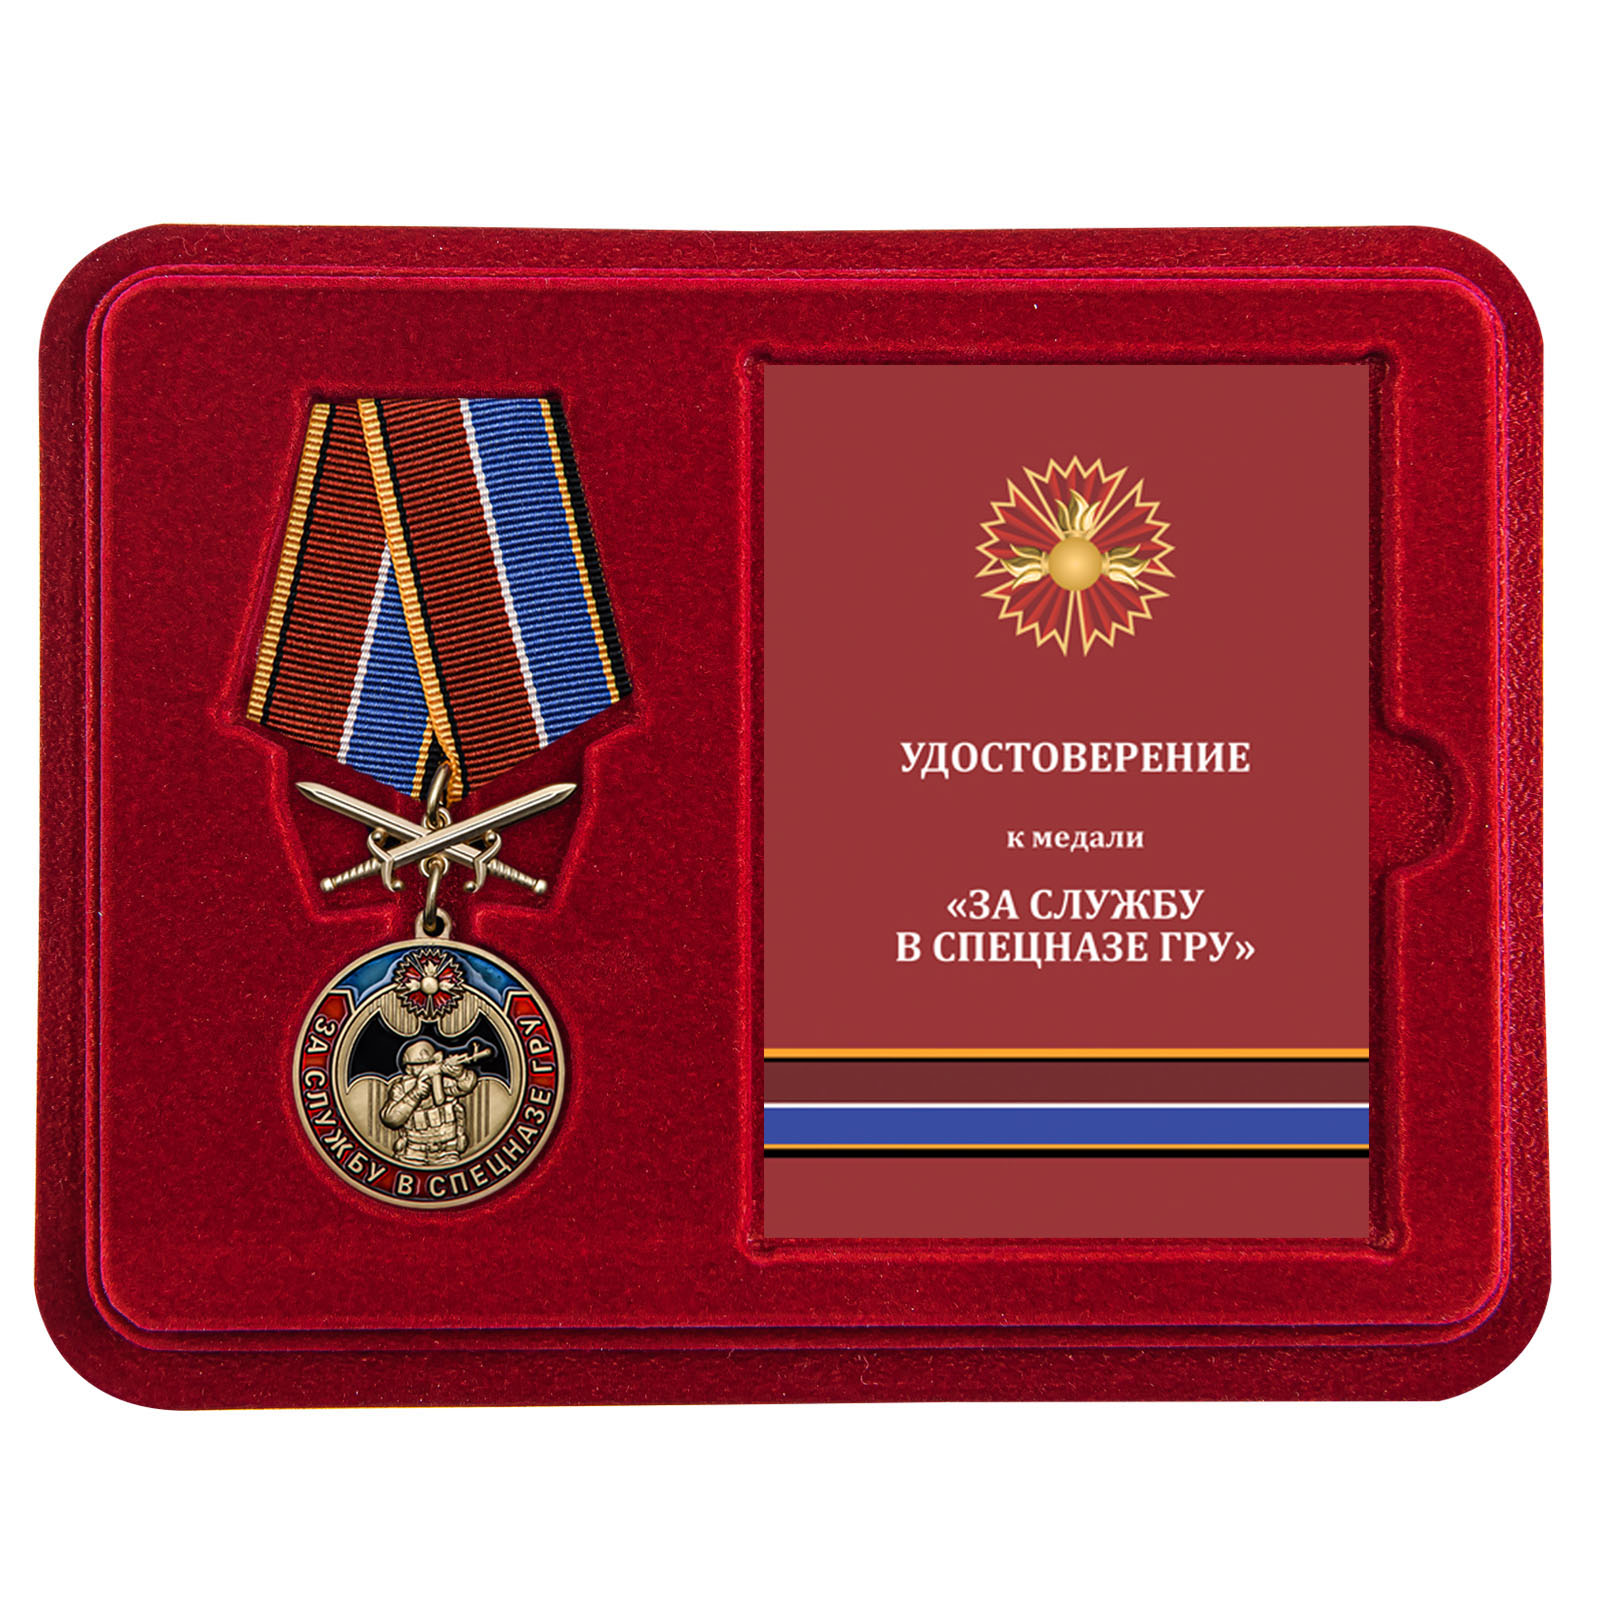 Купить медаль За службу в Спецназе ГРУ по экономичной цене